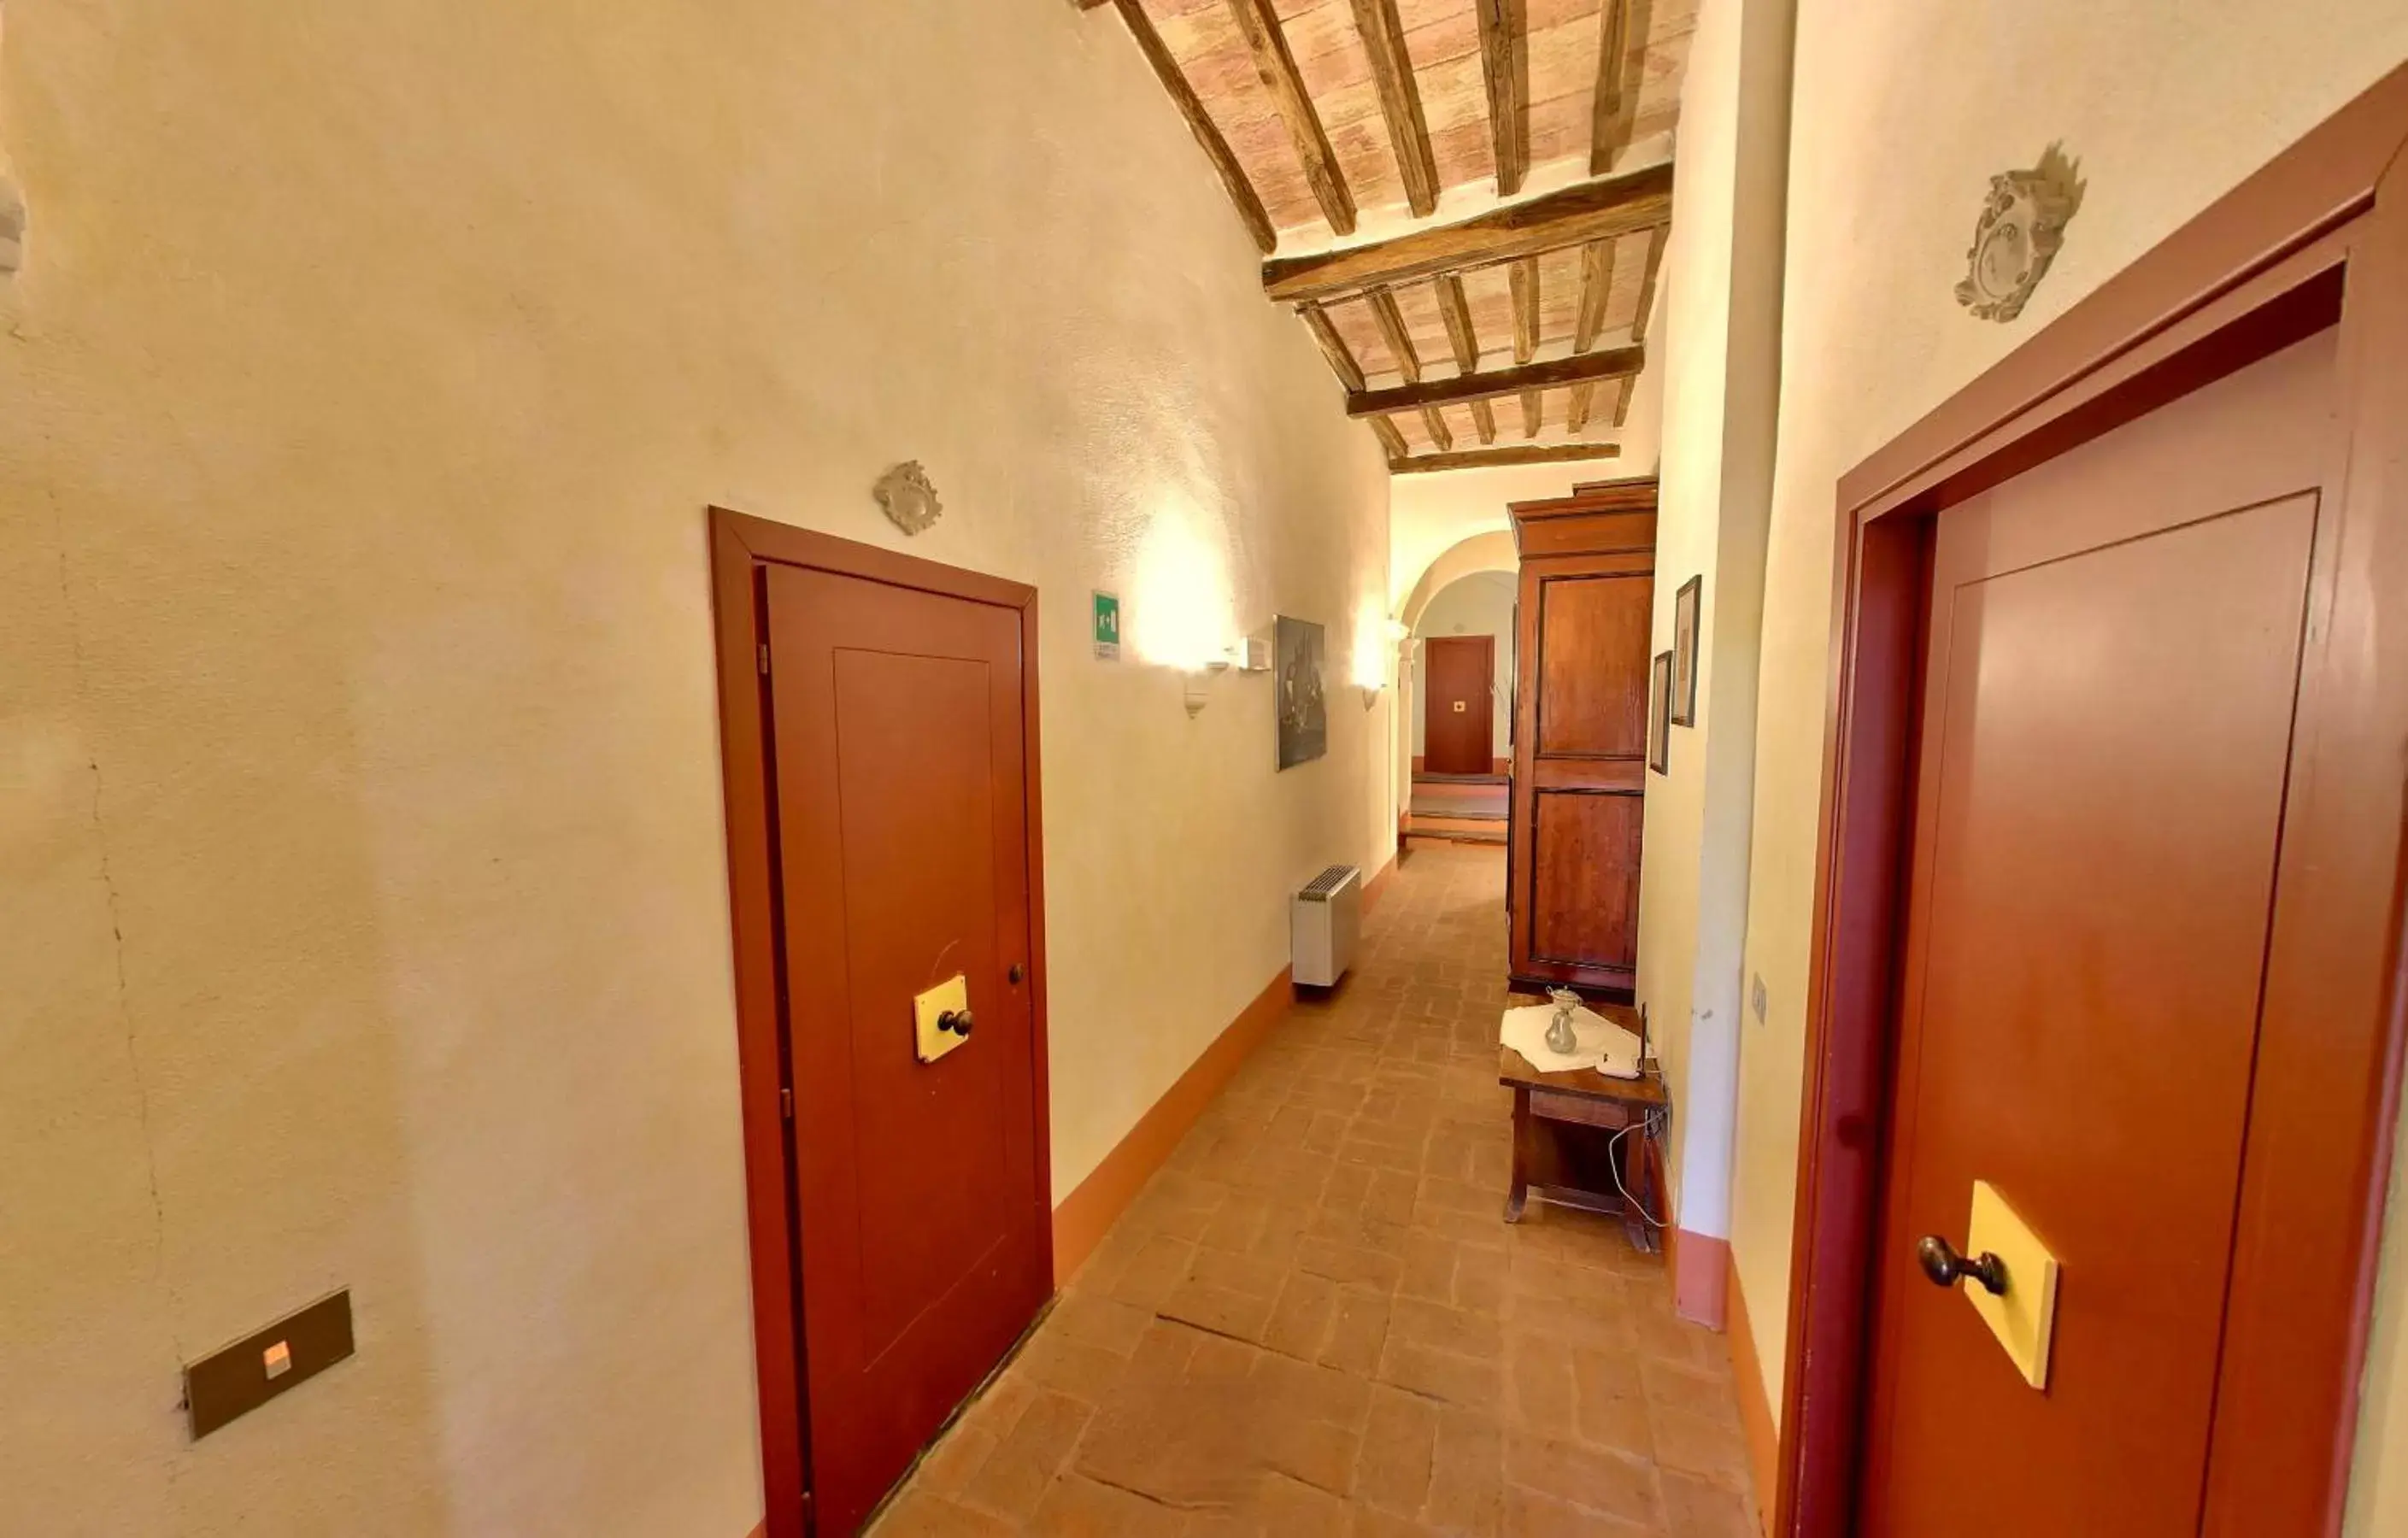 Bathroom in Monastero Le Grazie